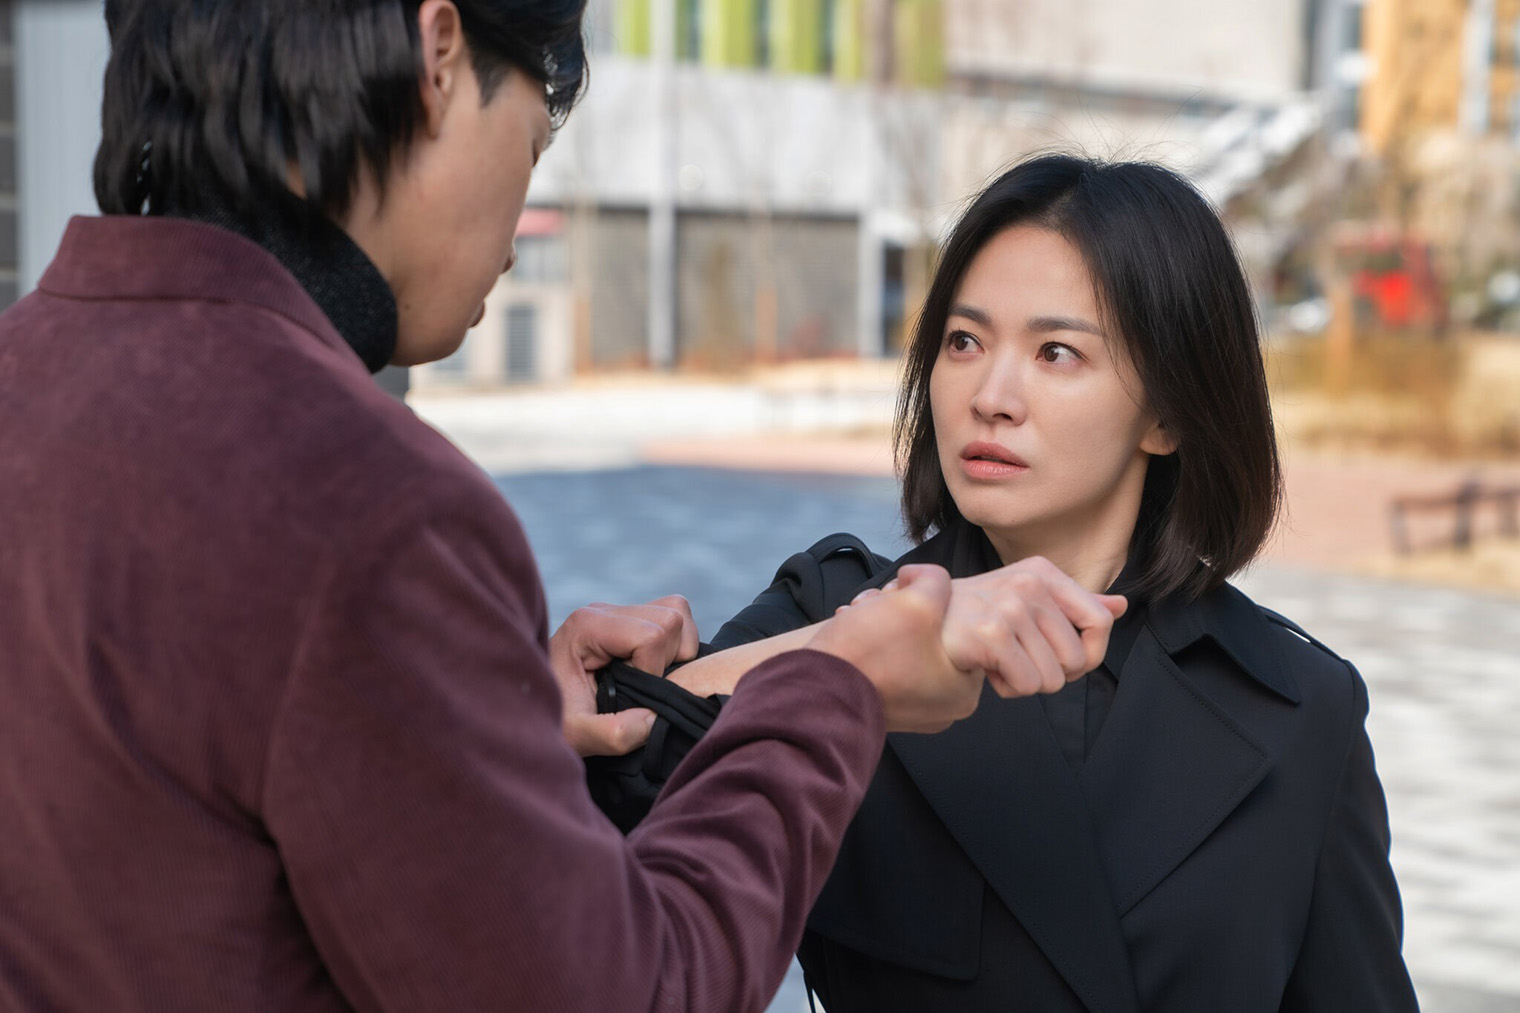 Сериал подтолкнул правительство Южной Кореи доработать текущие законы так, чтобы в будущем школьные хулиганы испытывали трудности при поступлении в университет или устройстве на работу. Источник: Netflix